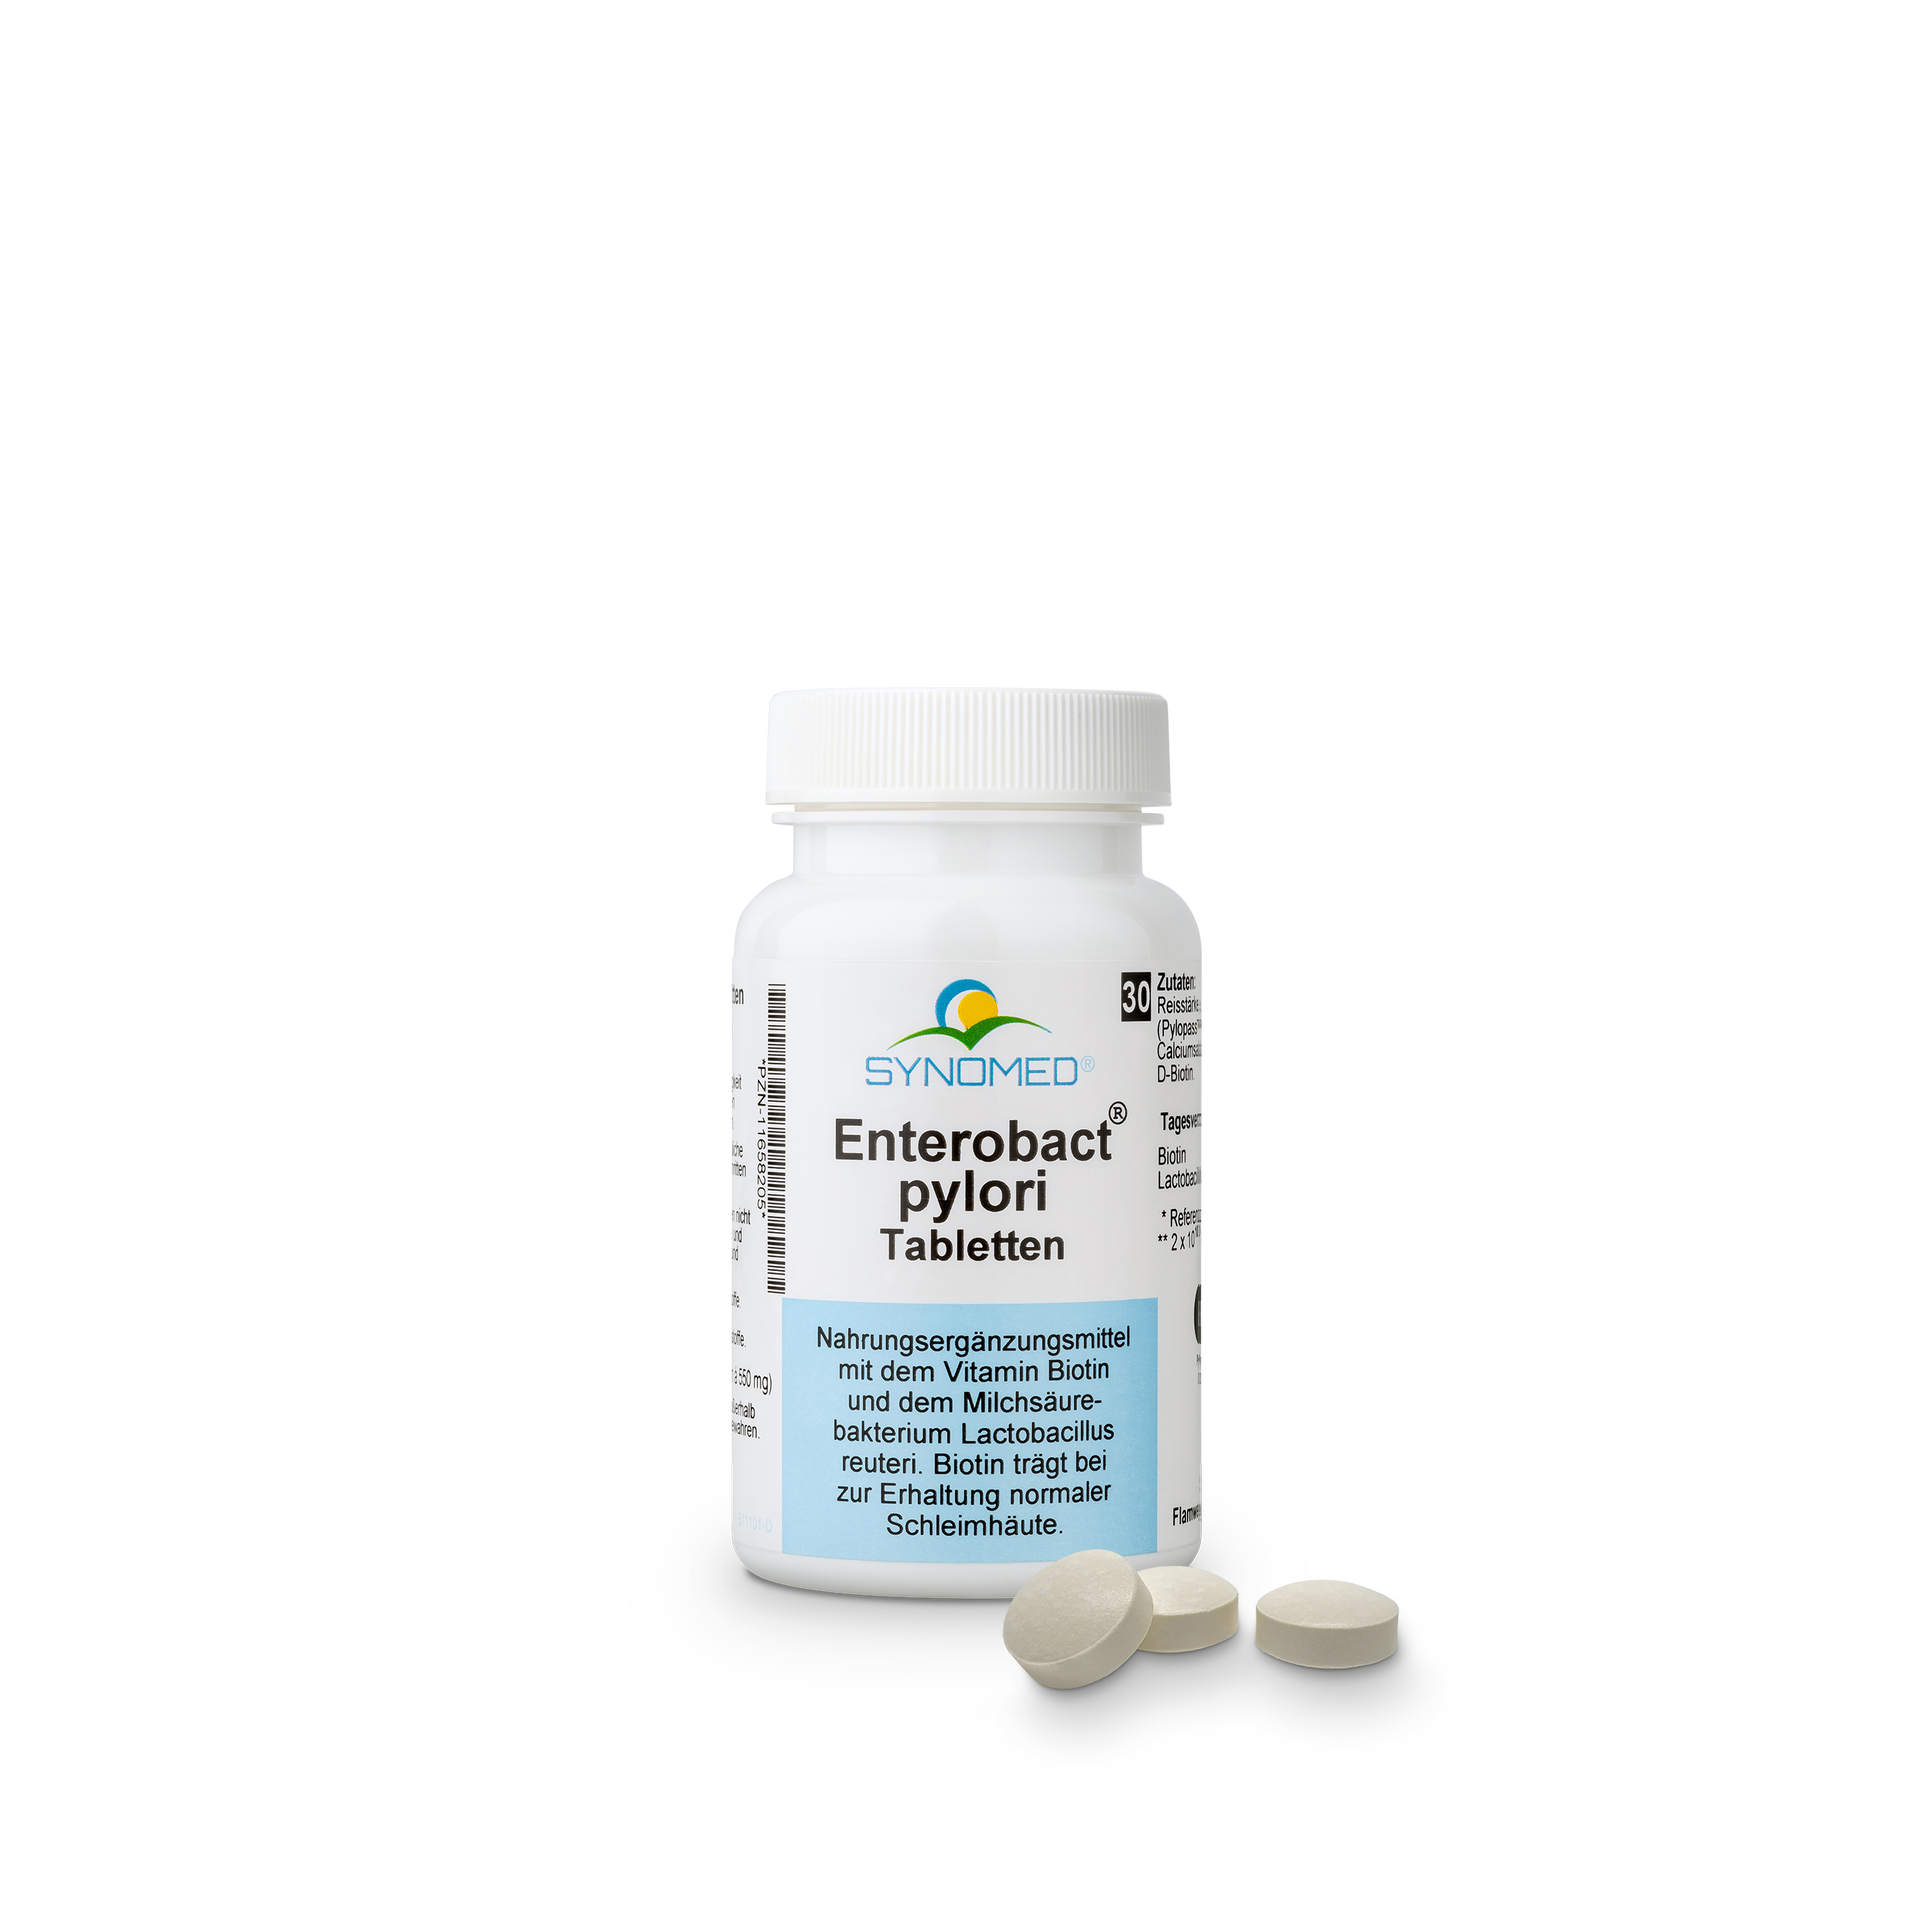 Enterobact ® pylori Tabletten